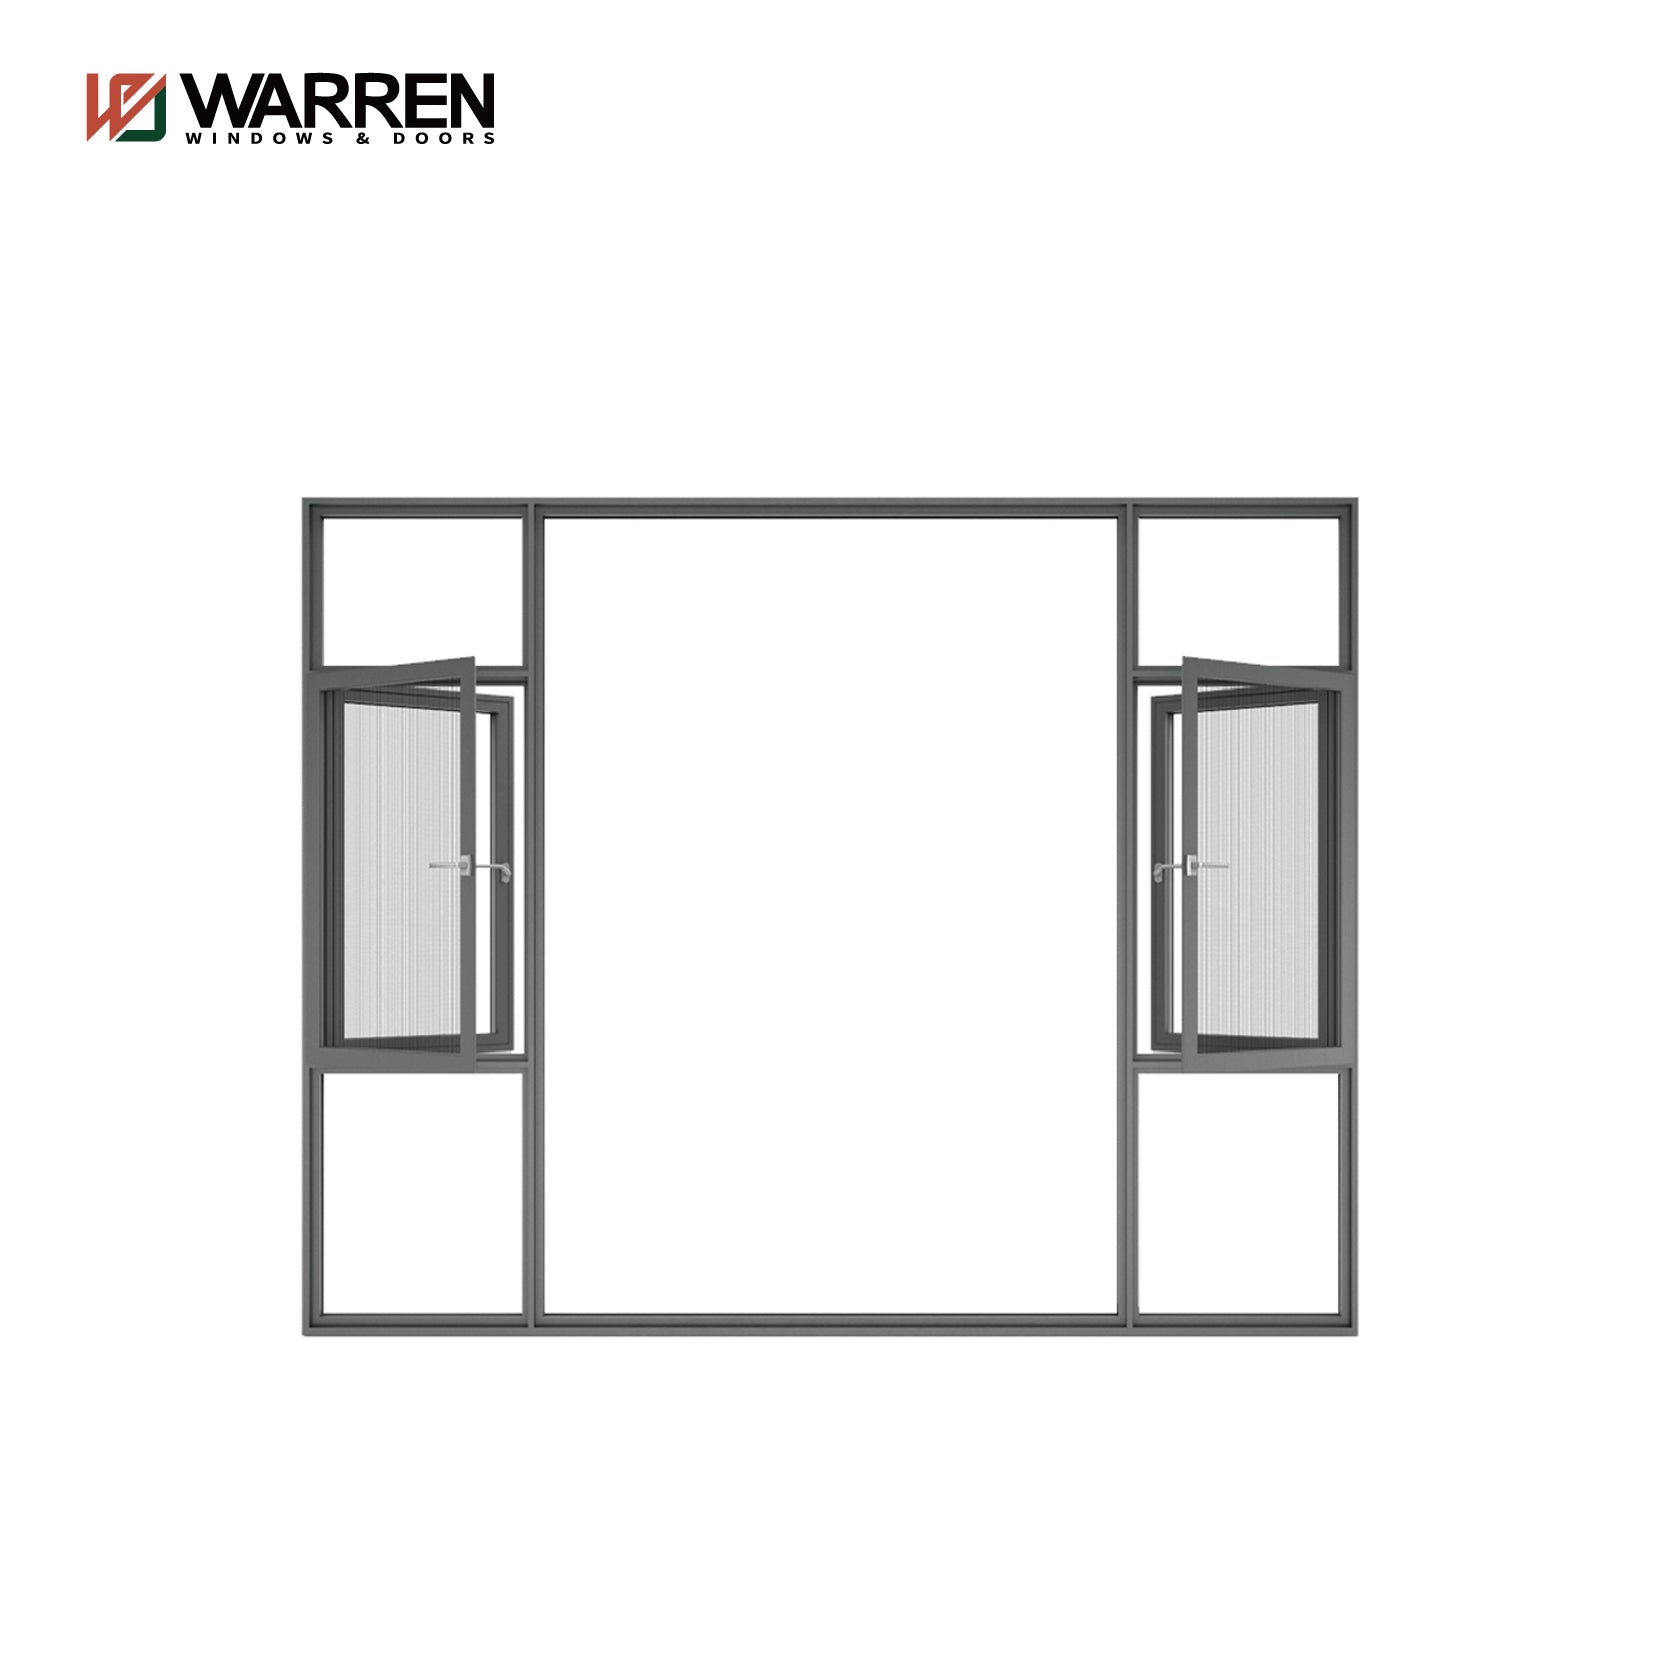 Warren Custom Made Casement Window Aluminium Frame Casement Window Home Casement Windows With Screen